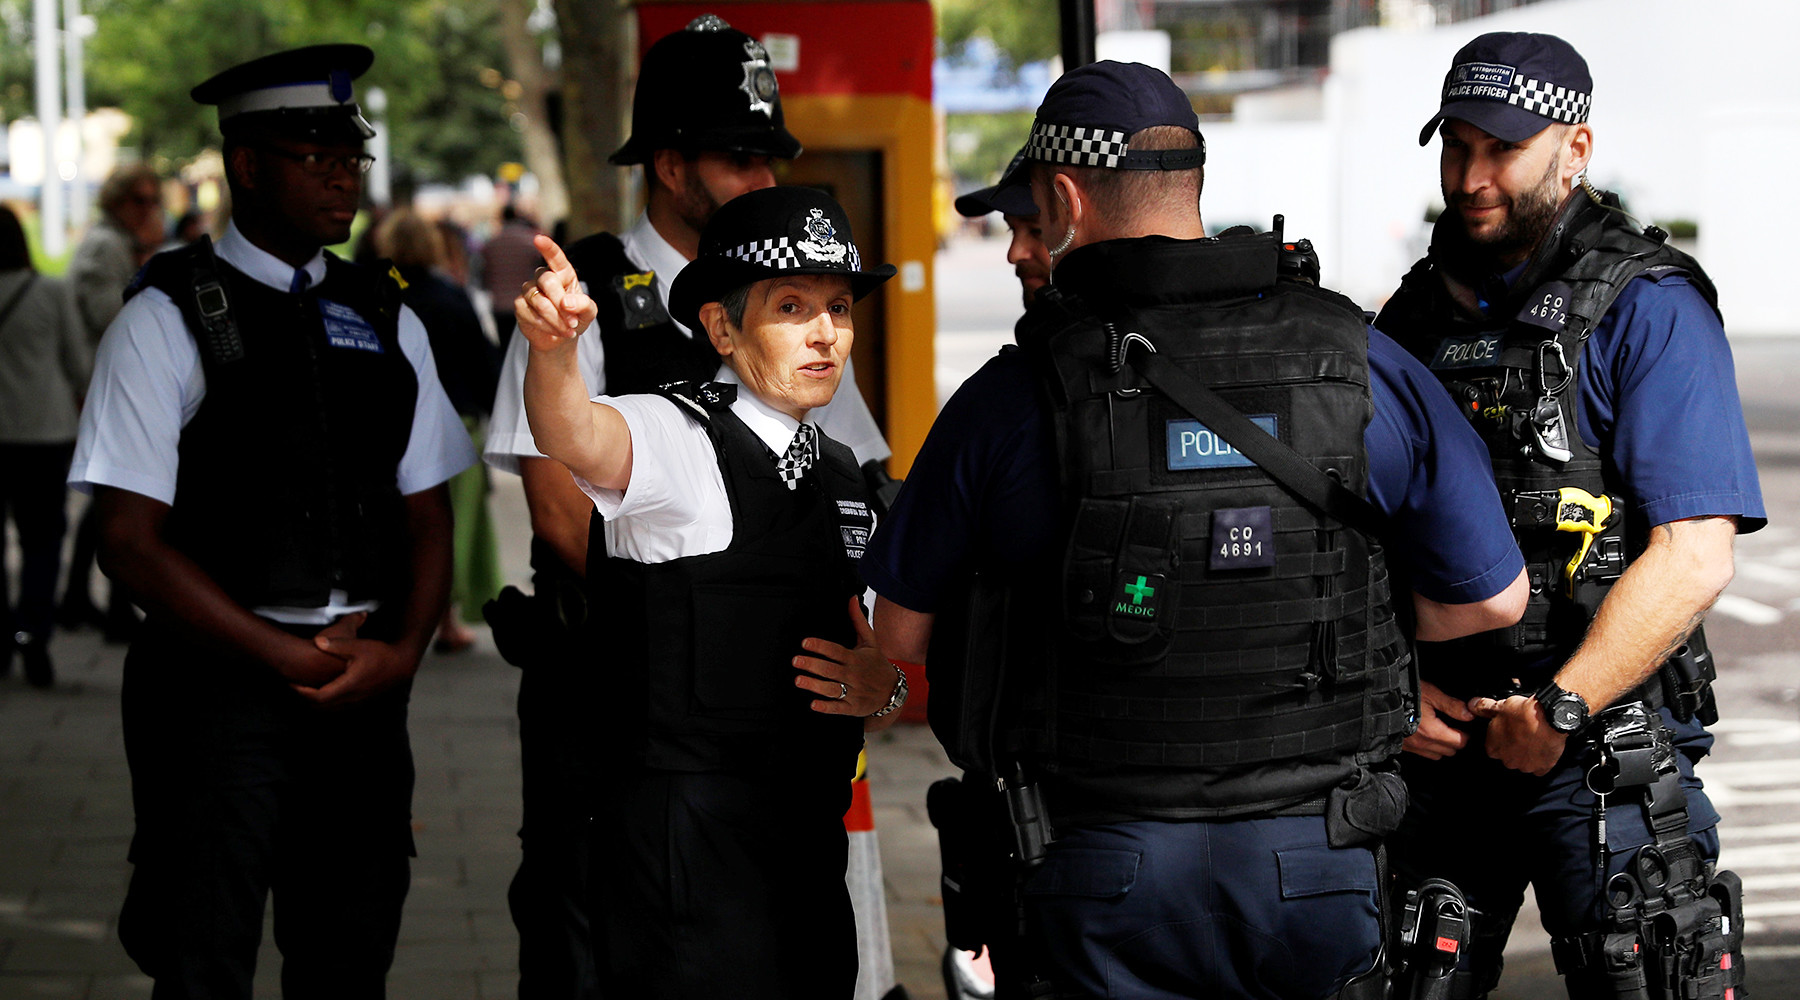 Полиция задержала 18-летнего подозреваемого в организации теракта в Лондоне 